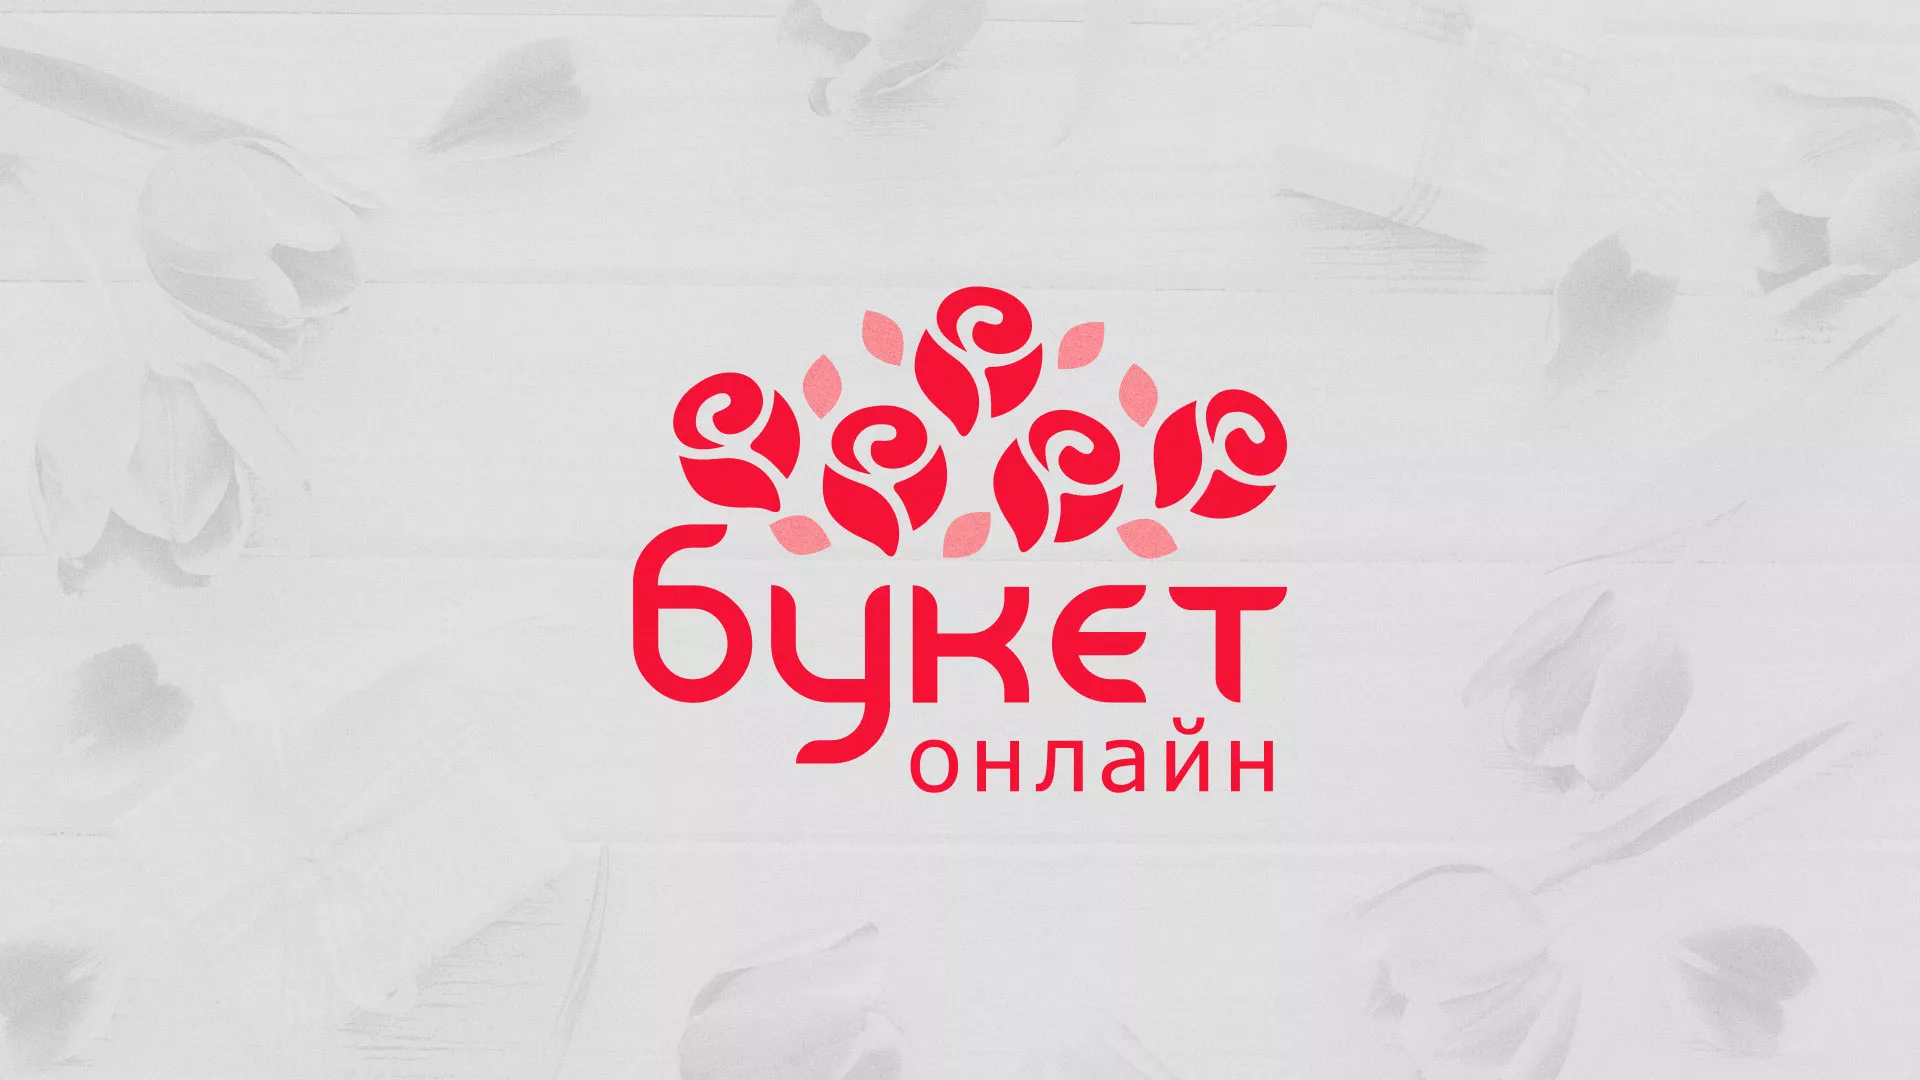 Создание интернет-магазина «Букет-онлайн» по цветам в Бежецке